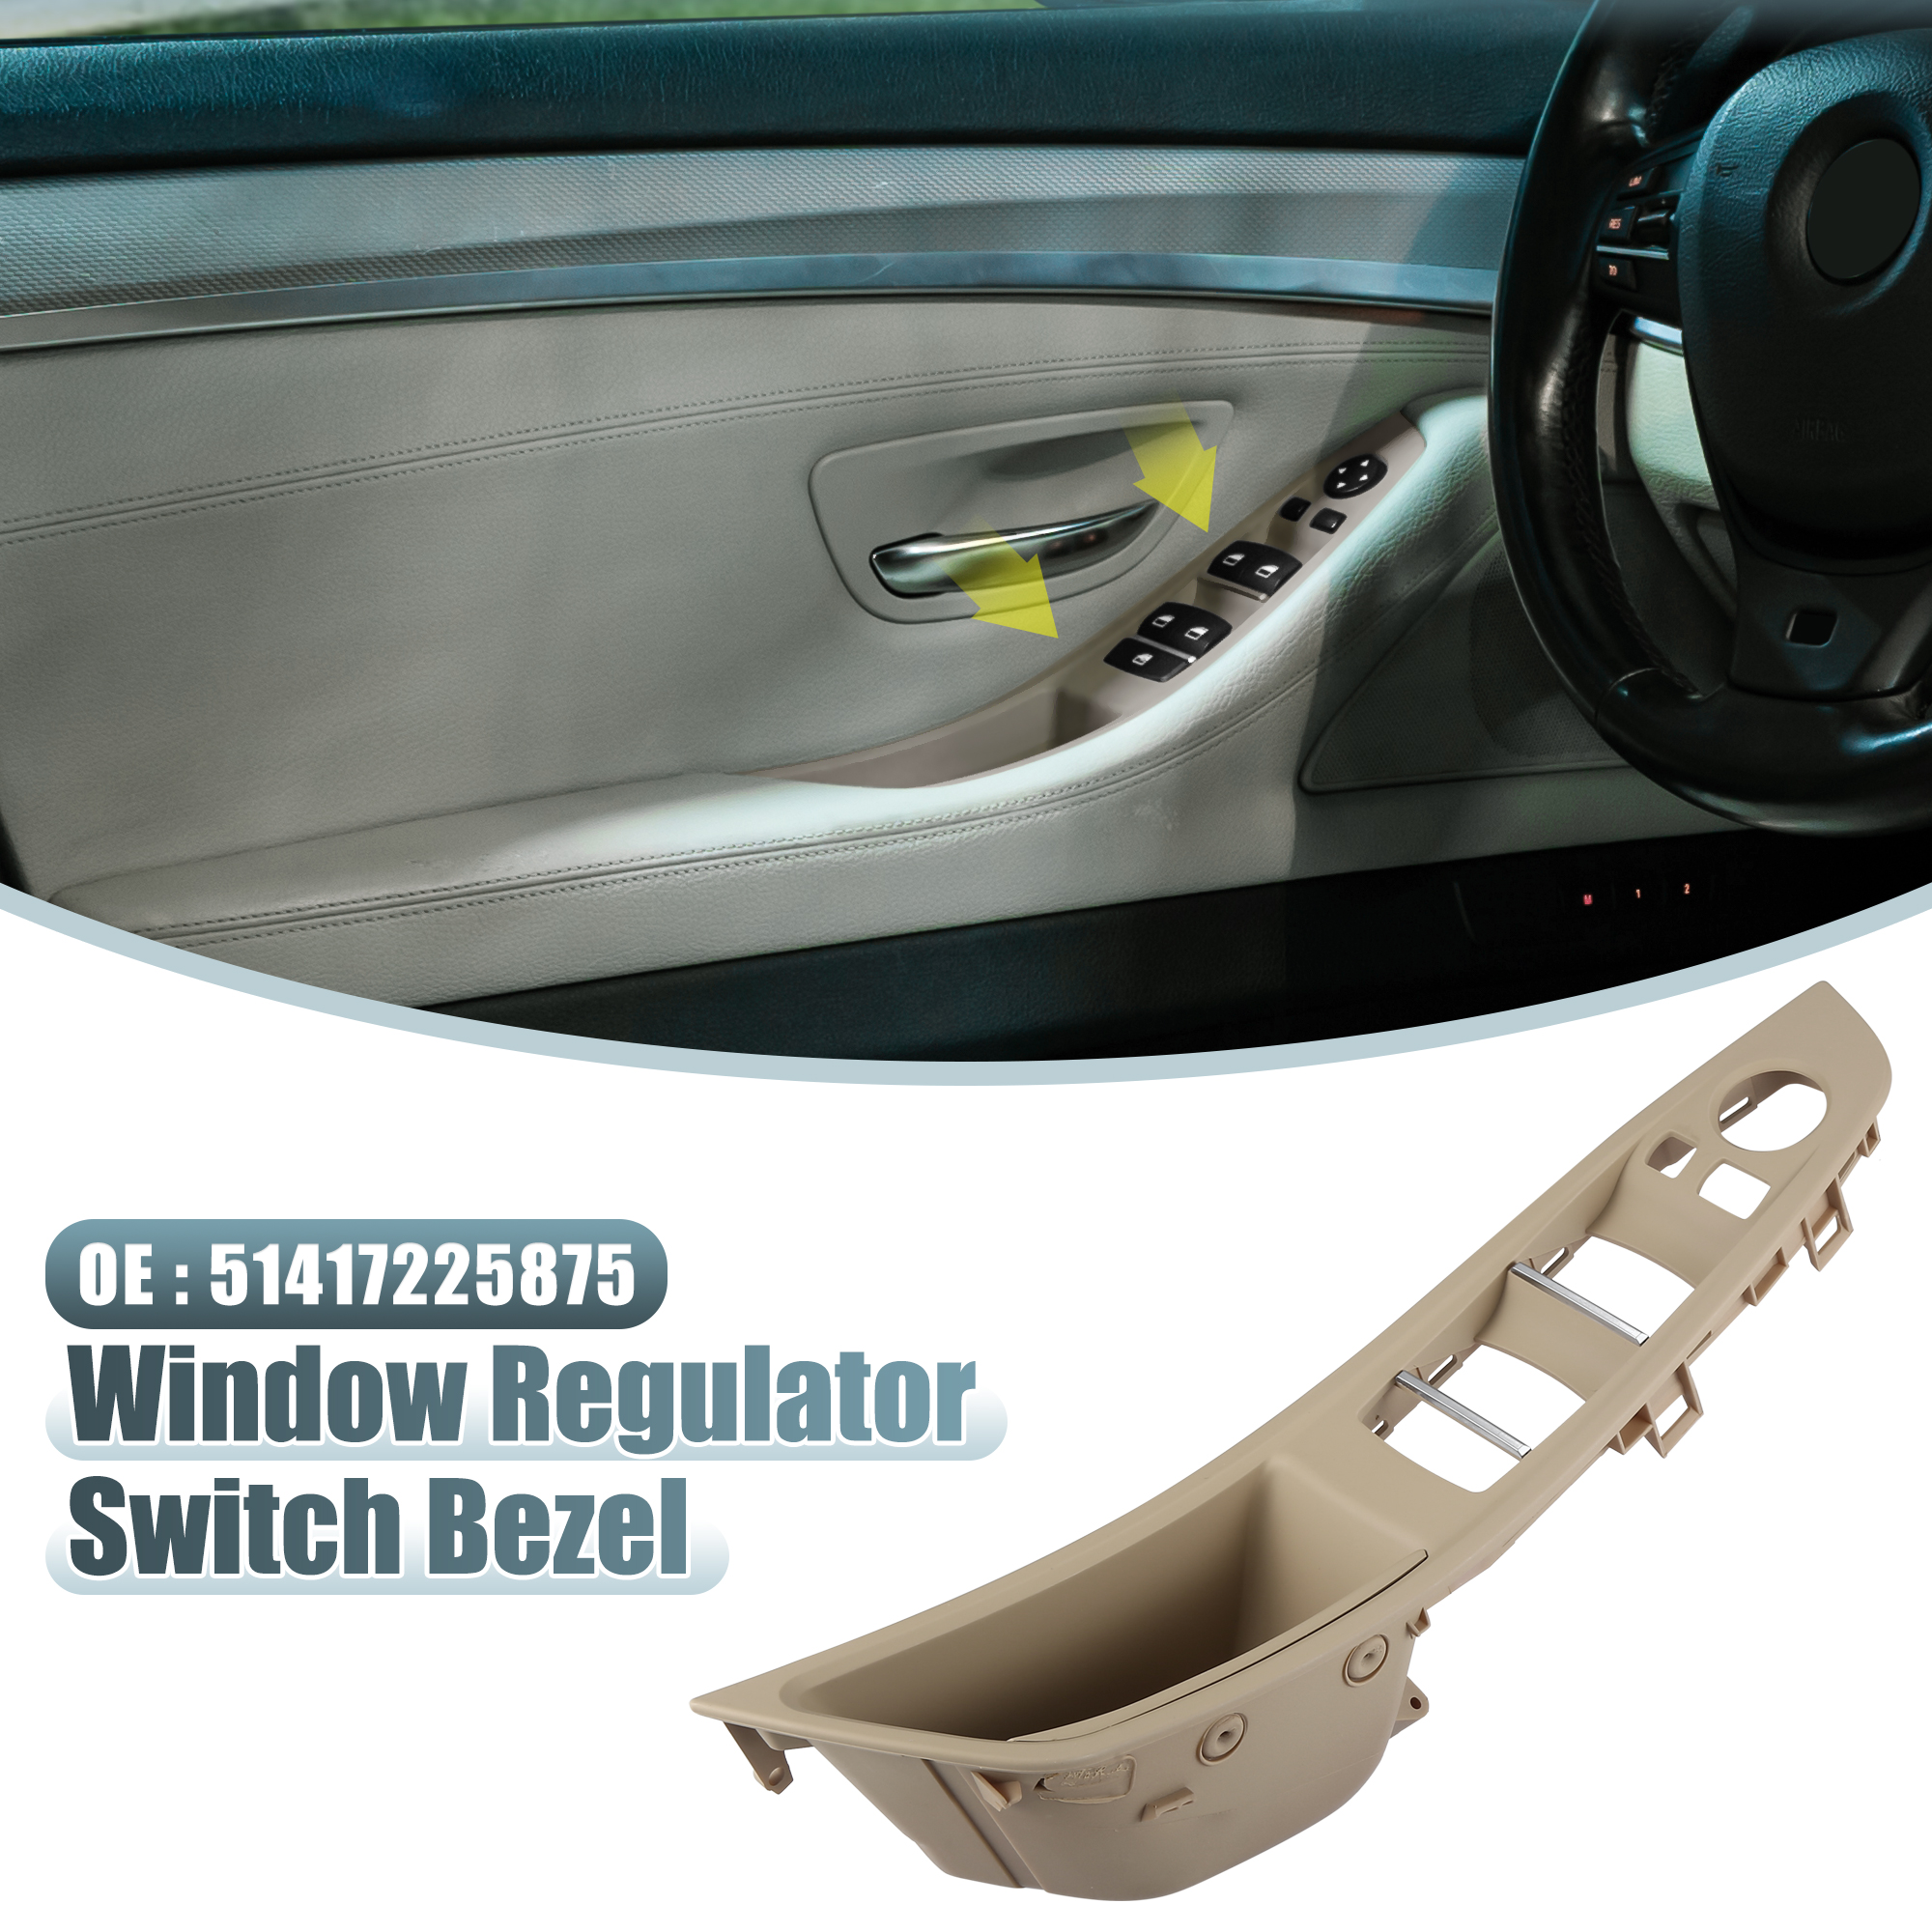 Unique Bargains Front Left Car Window Switch Bezel for BMW 528i 3.0L 2011-2016 51417225875 Khaki